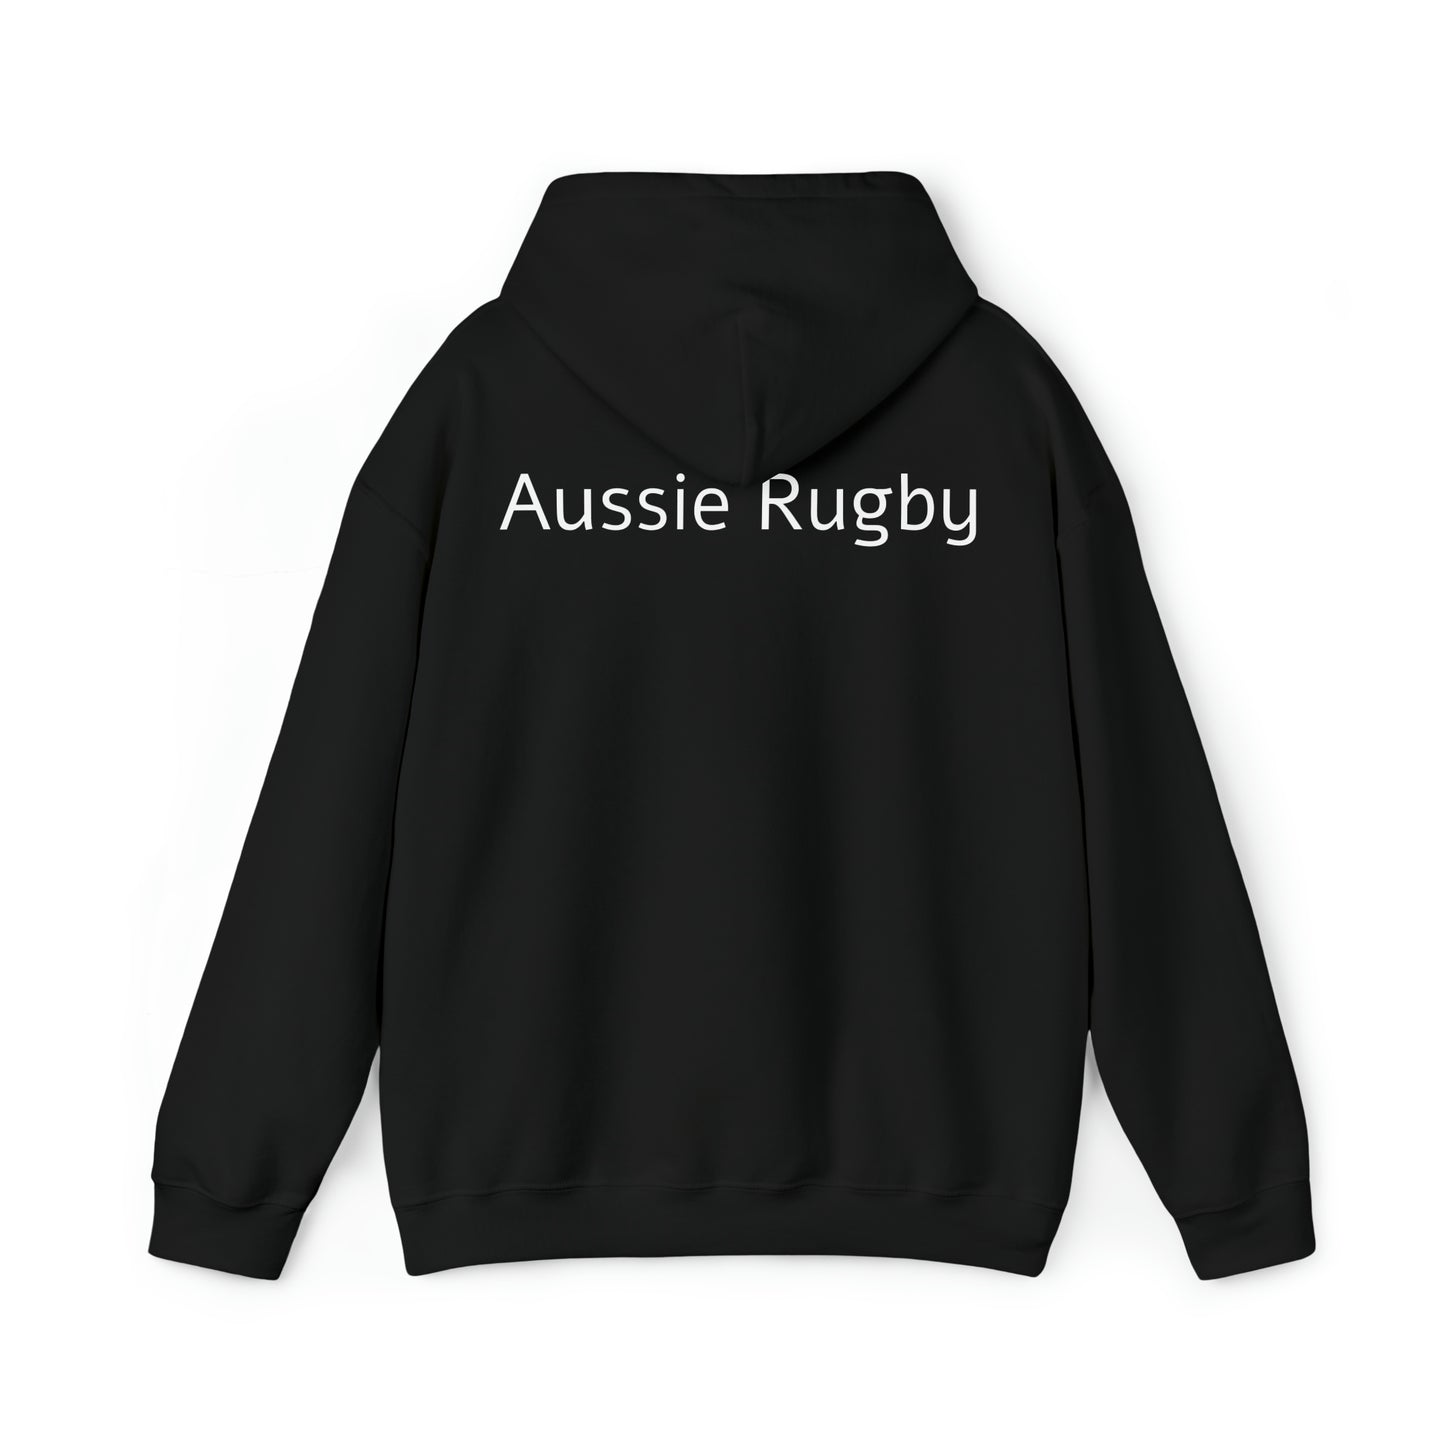 Ready Aussies - black hoodies